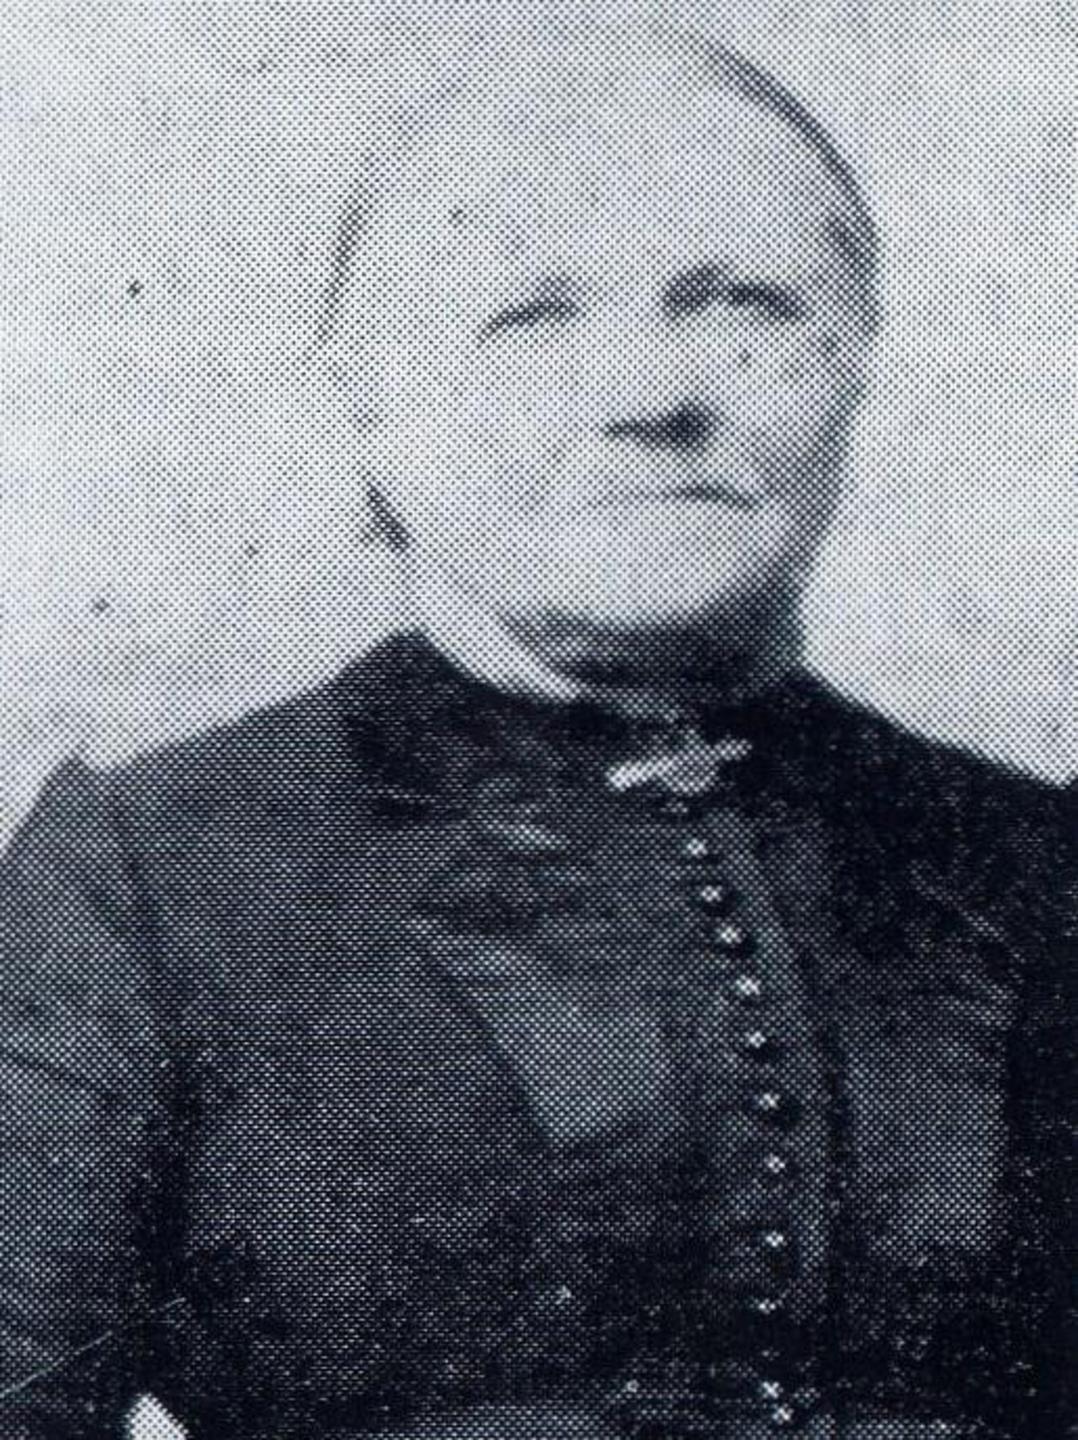 Hanne Marie Carlsdatter or Krants (1824 - 1905) Profile